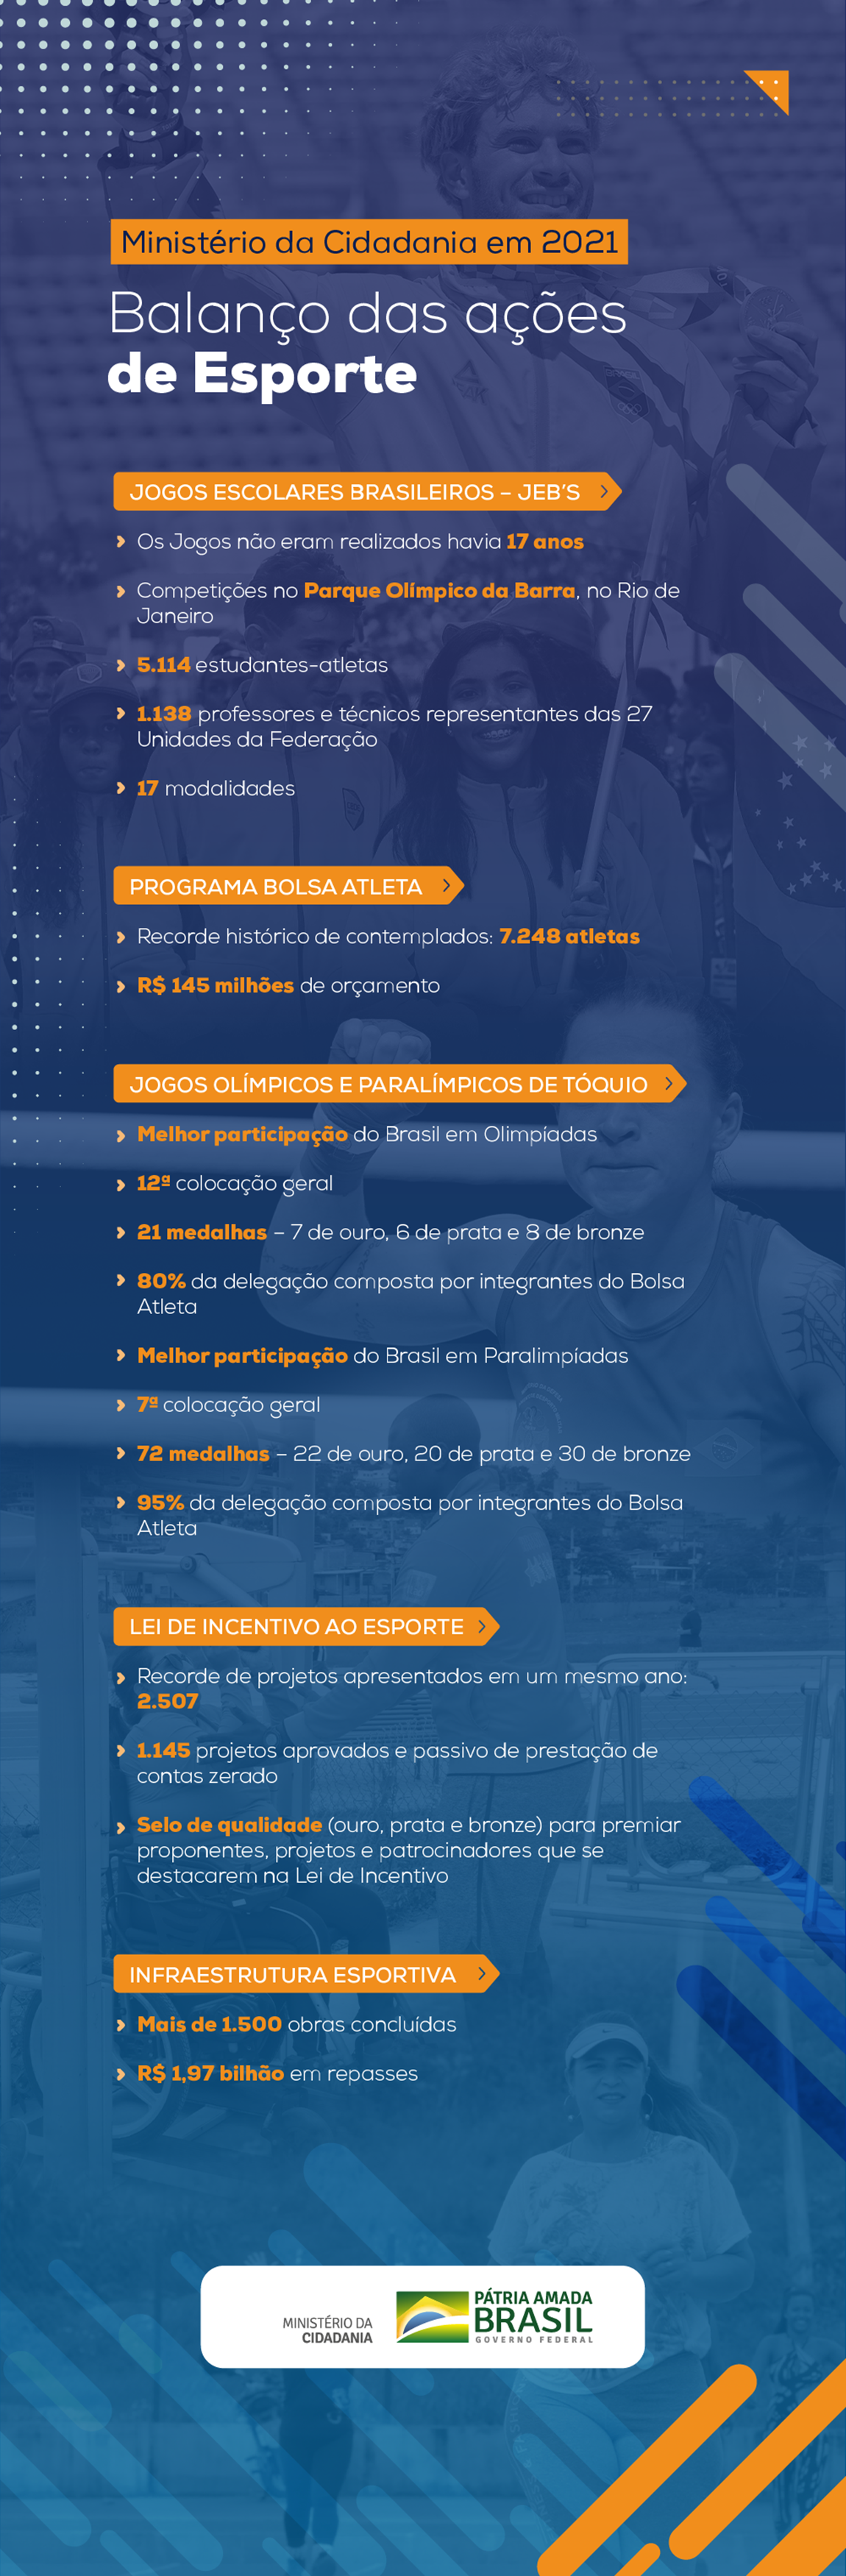 infografia_balanco_esporte.png